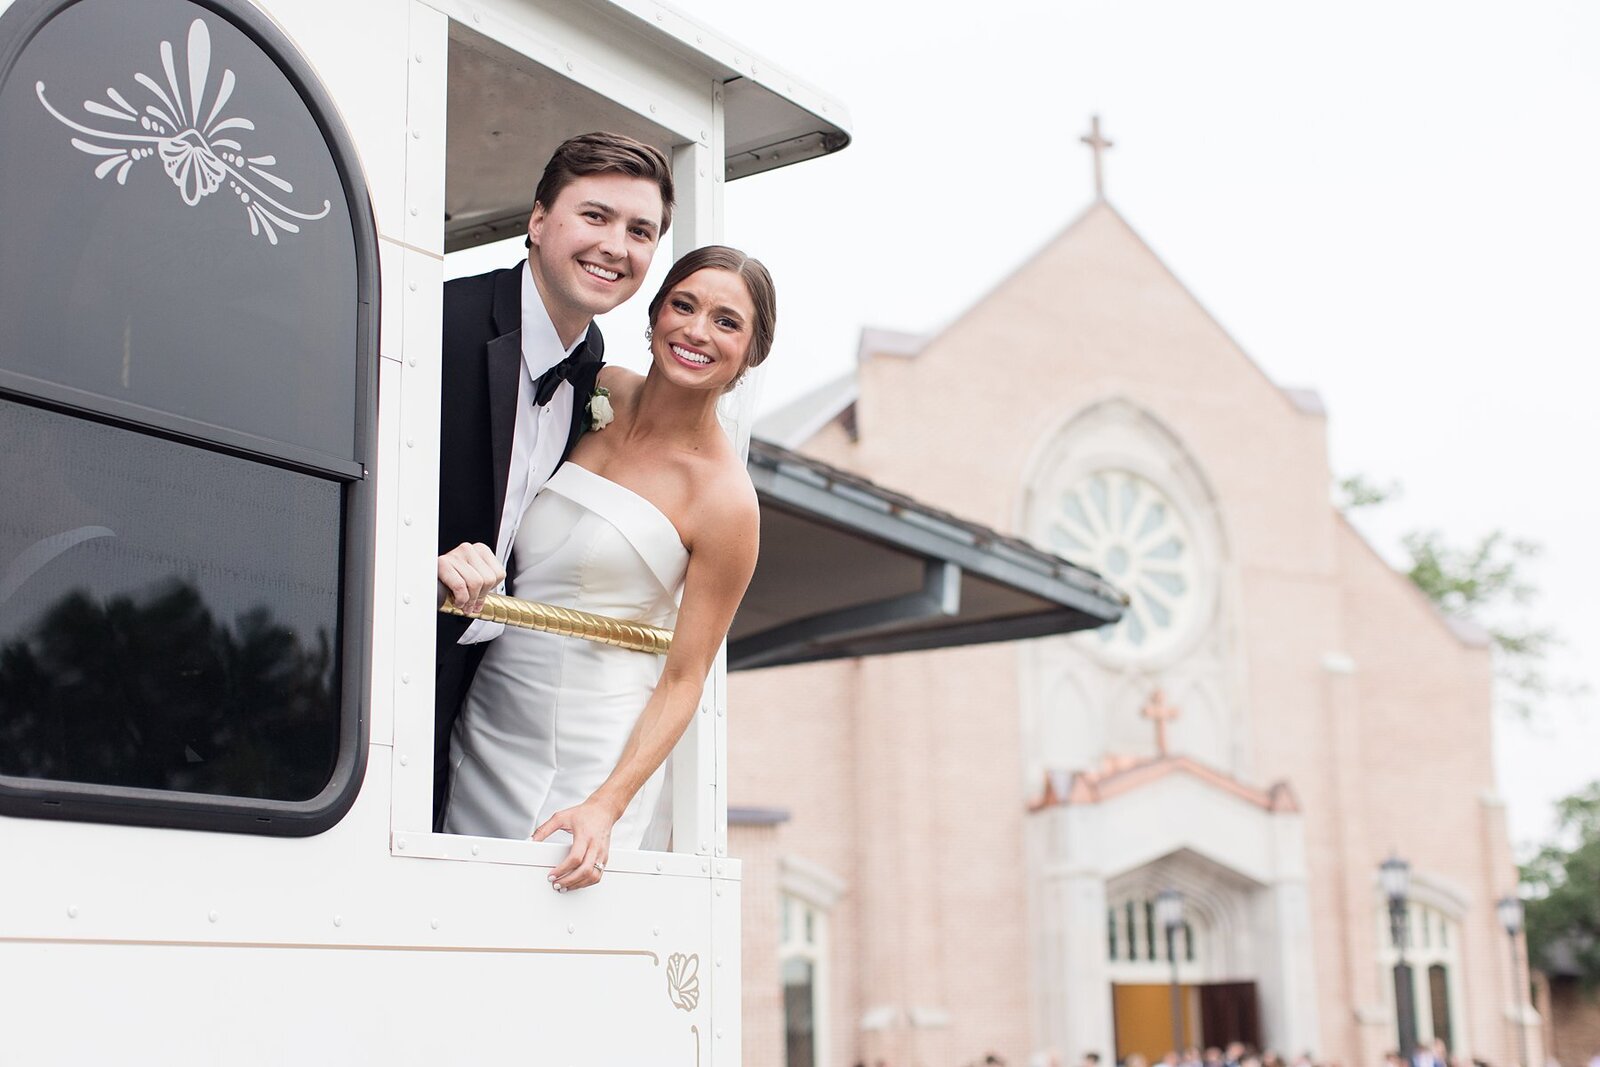 Mobile-Alabama-wedding-photographer-st-ignatius-catholic-church_0021